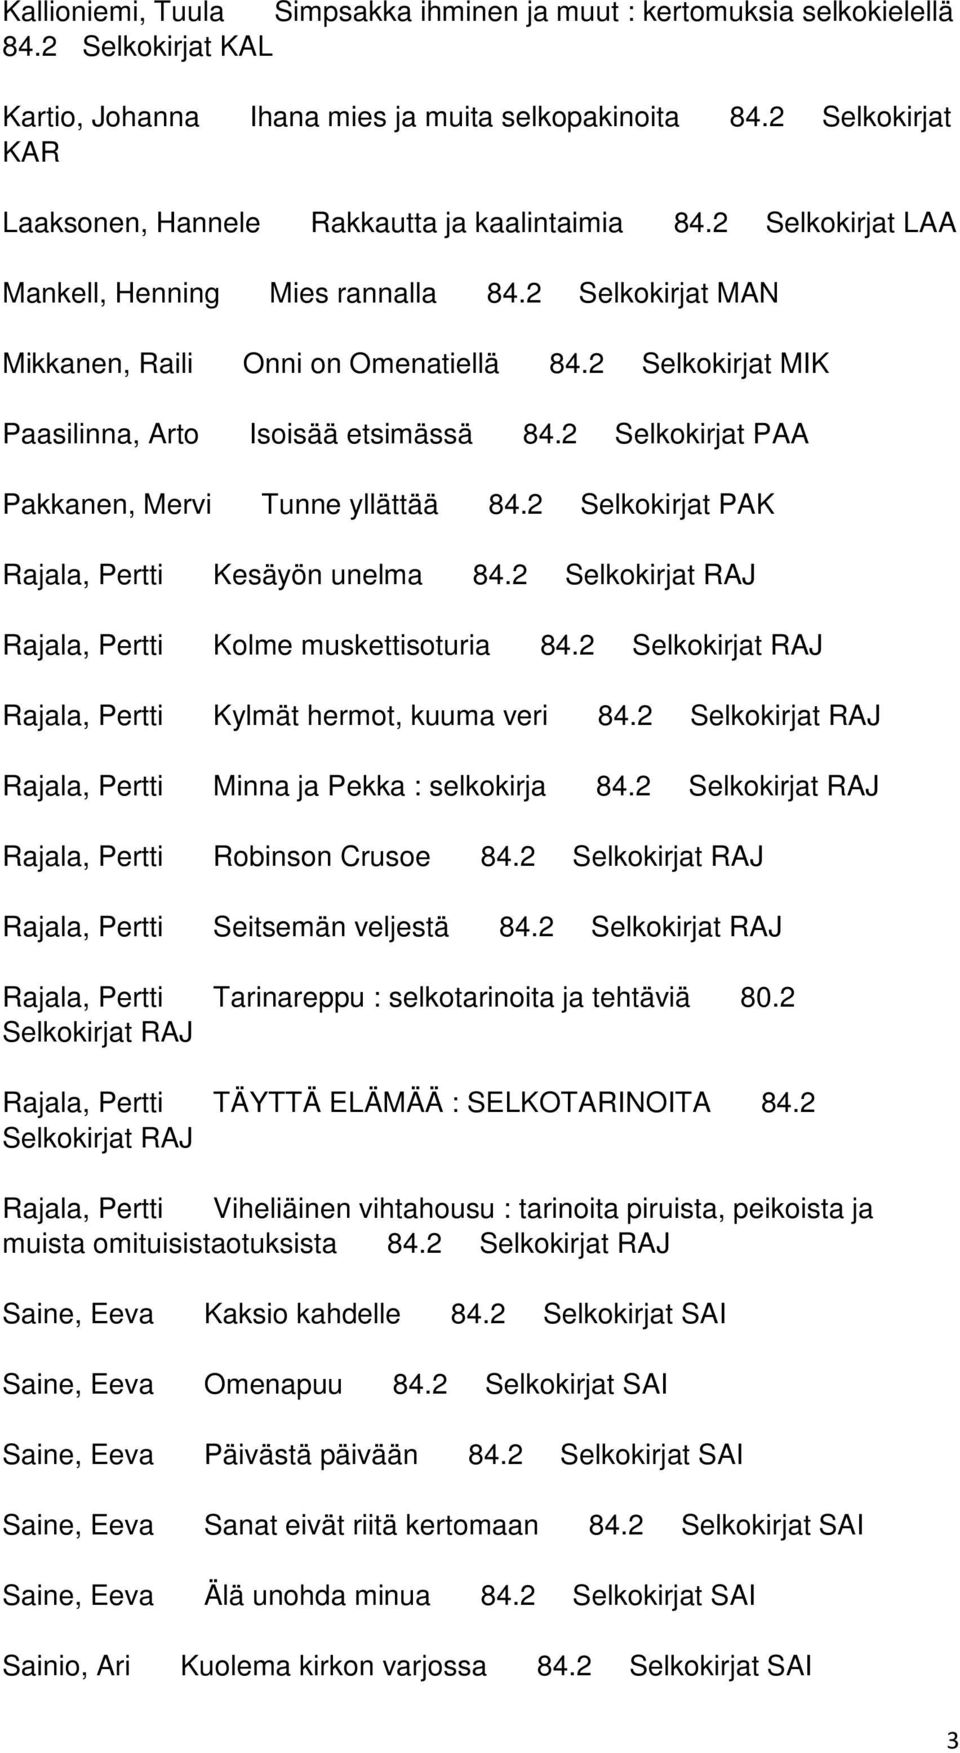 2 Selkokirjat MIK Paasilinna, Arto Isoisää etsimässä 84.2 Selkokirjat PAA Pakkanen, Mervi Tunne yllättää 84.2 Selkokirjat PAK Rajala, Pertti Kesäyön unelma 84.